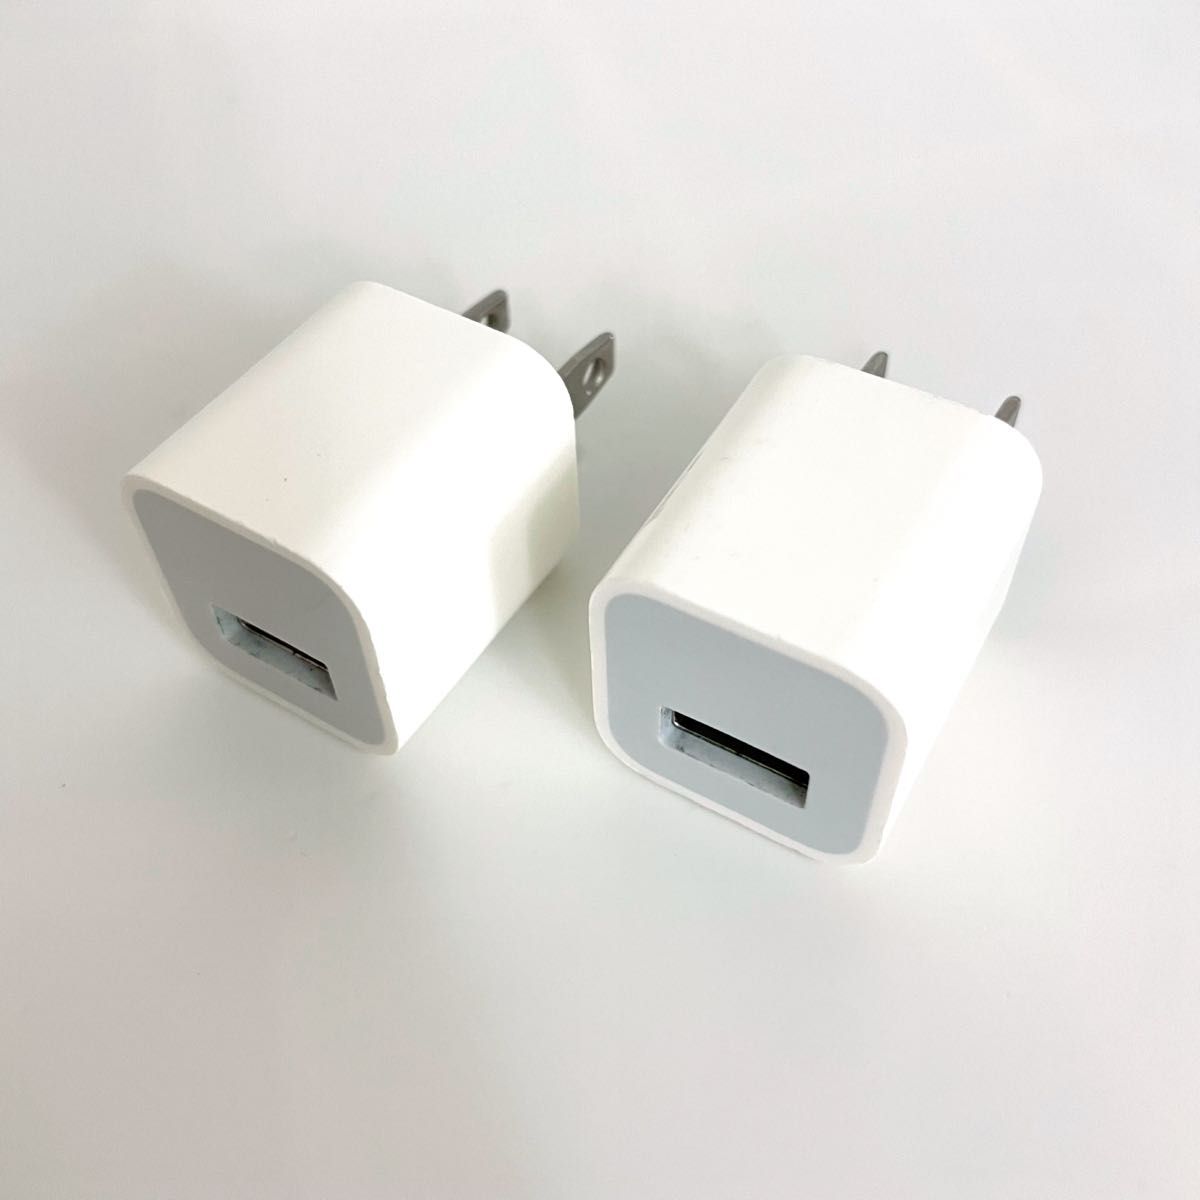 【純正付属品】Apple iPhone充電器5W USB電源アダプタ×2個セット★ACアダプターiPodiPad5V-1AタイプA